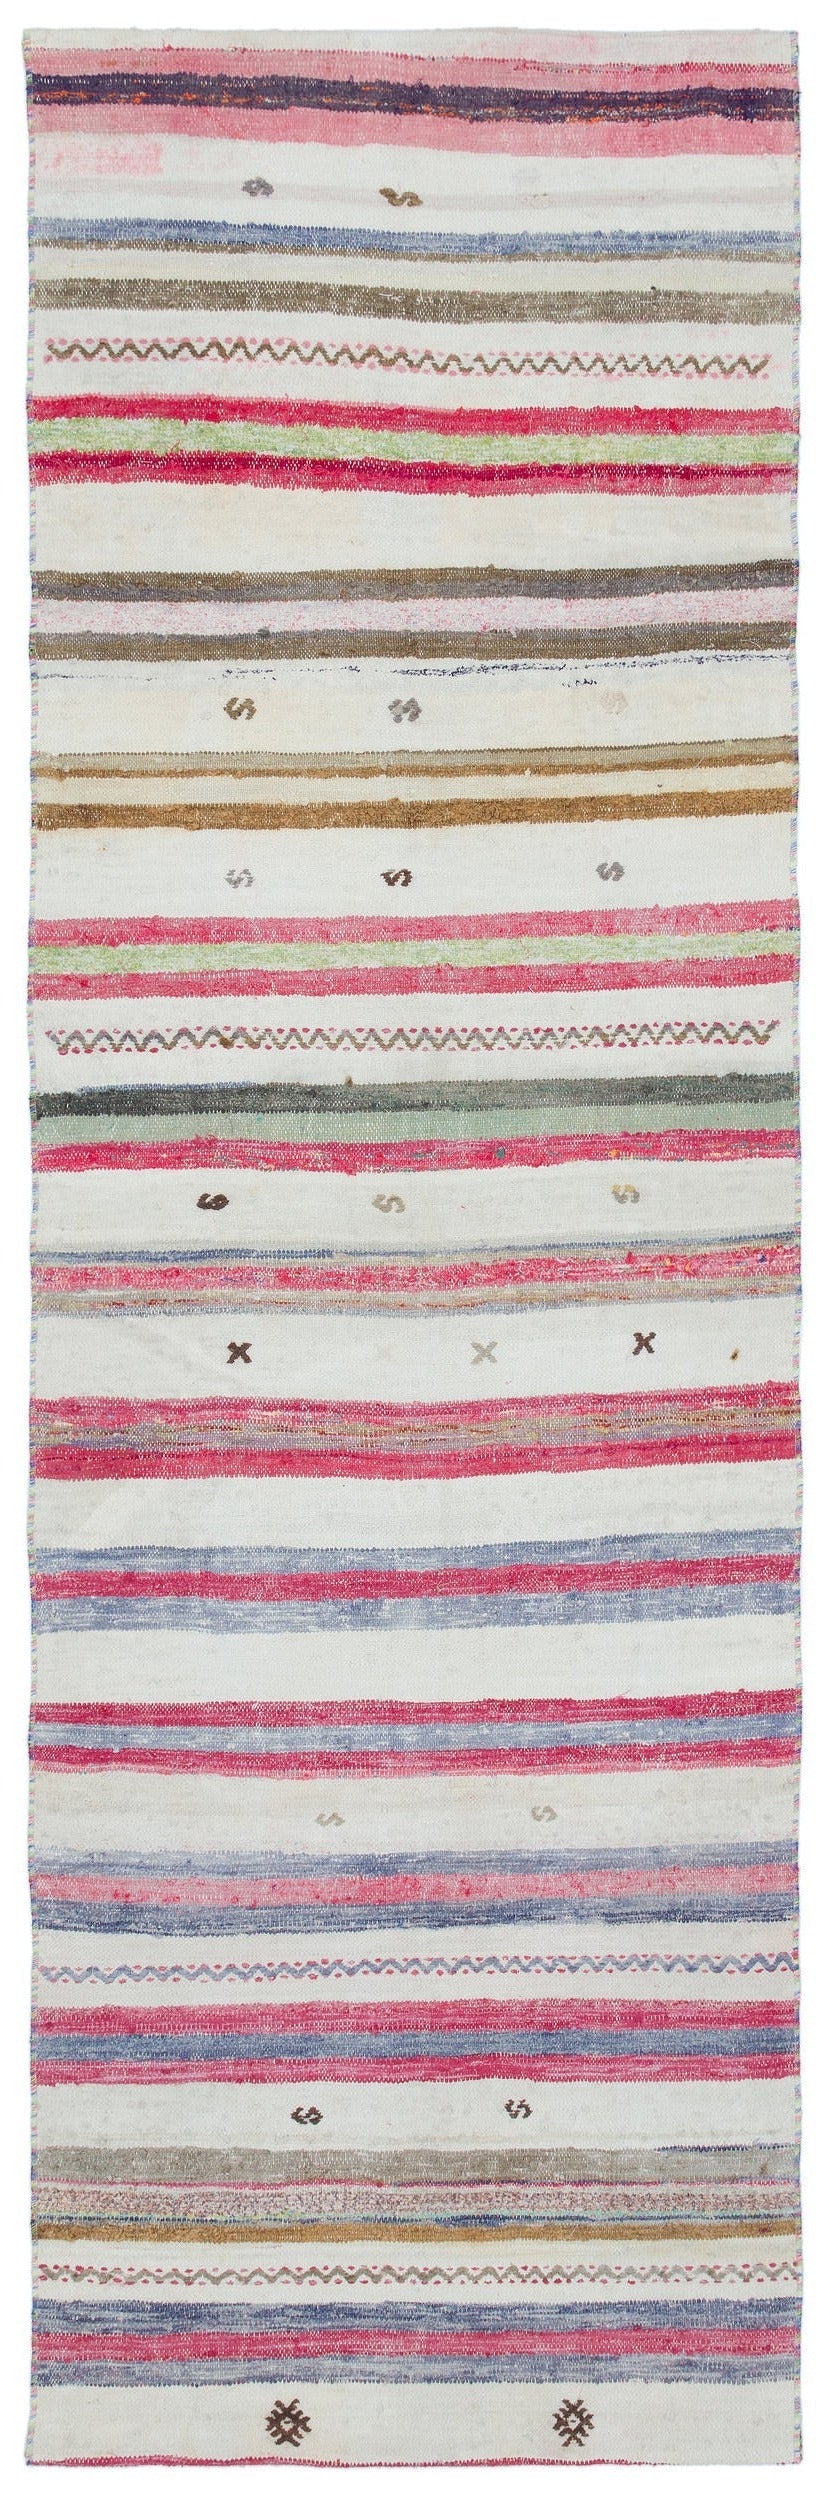 Cretan White Striped Wool Hand-Woven Carpet 088 x 270